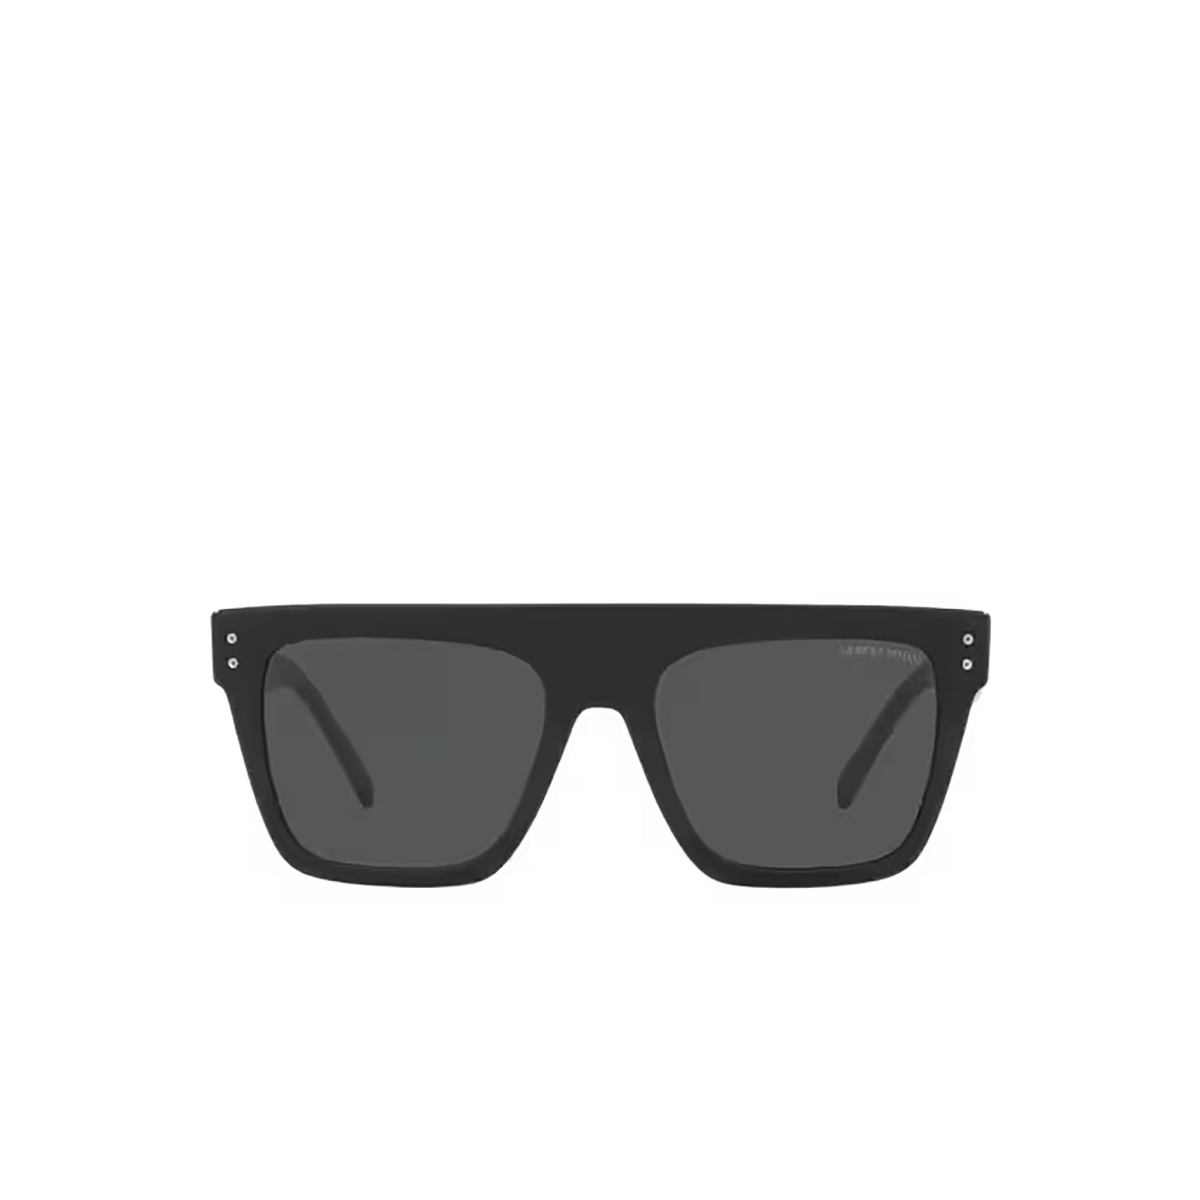 Giorgio Armani AR8177 Sunglasses 500187 Black - front view